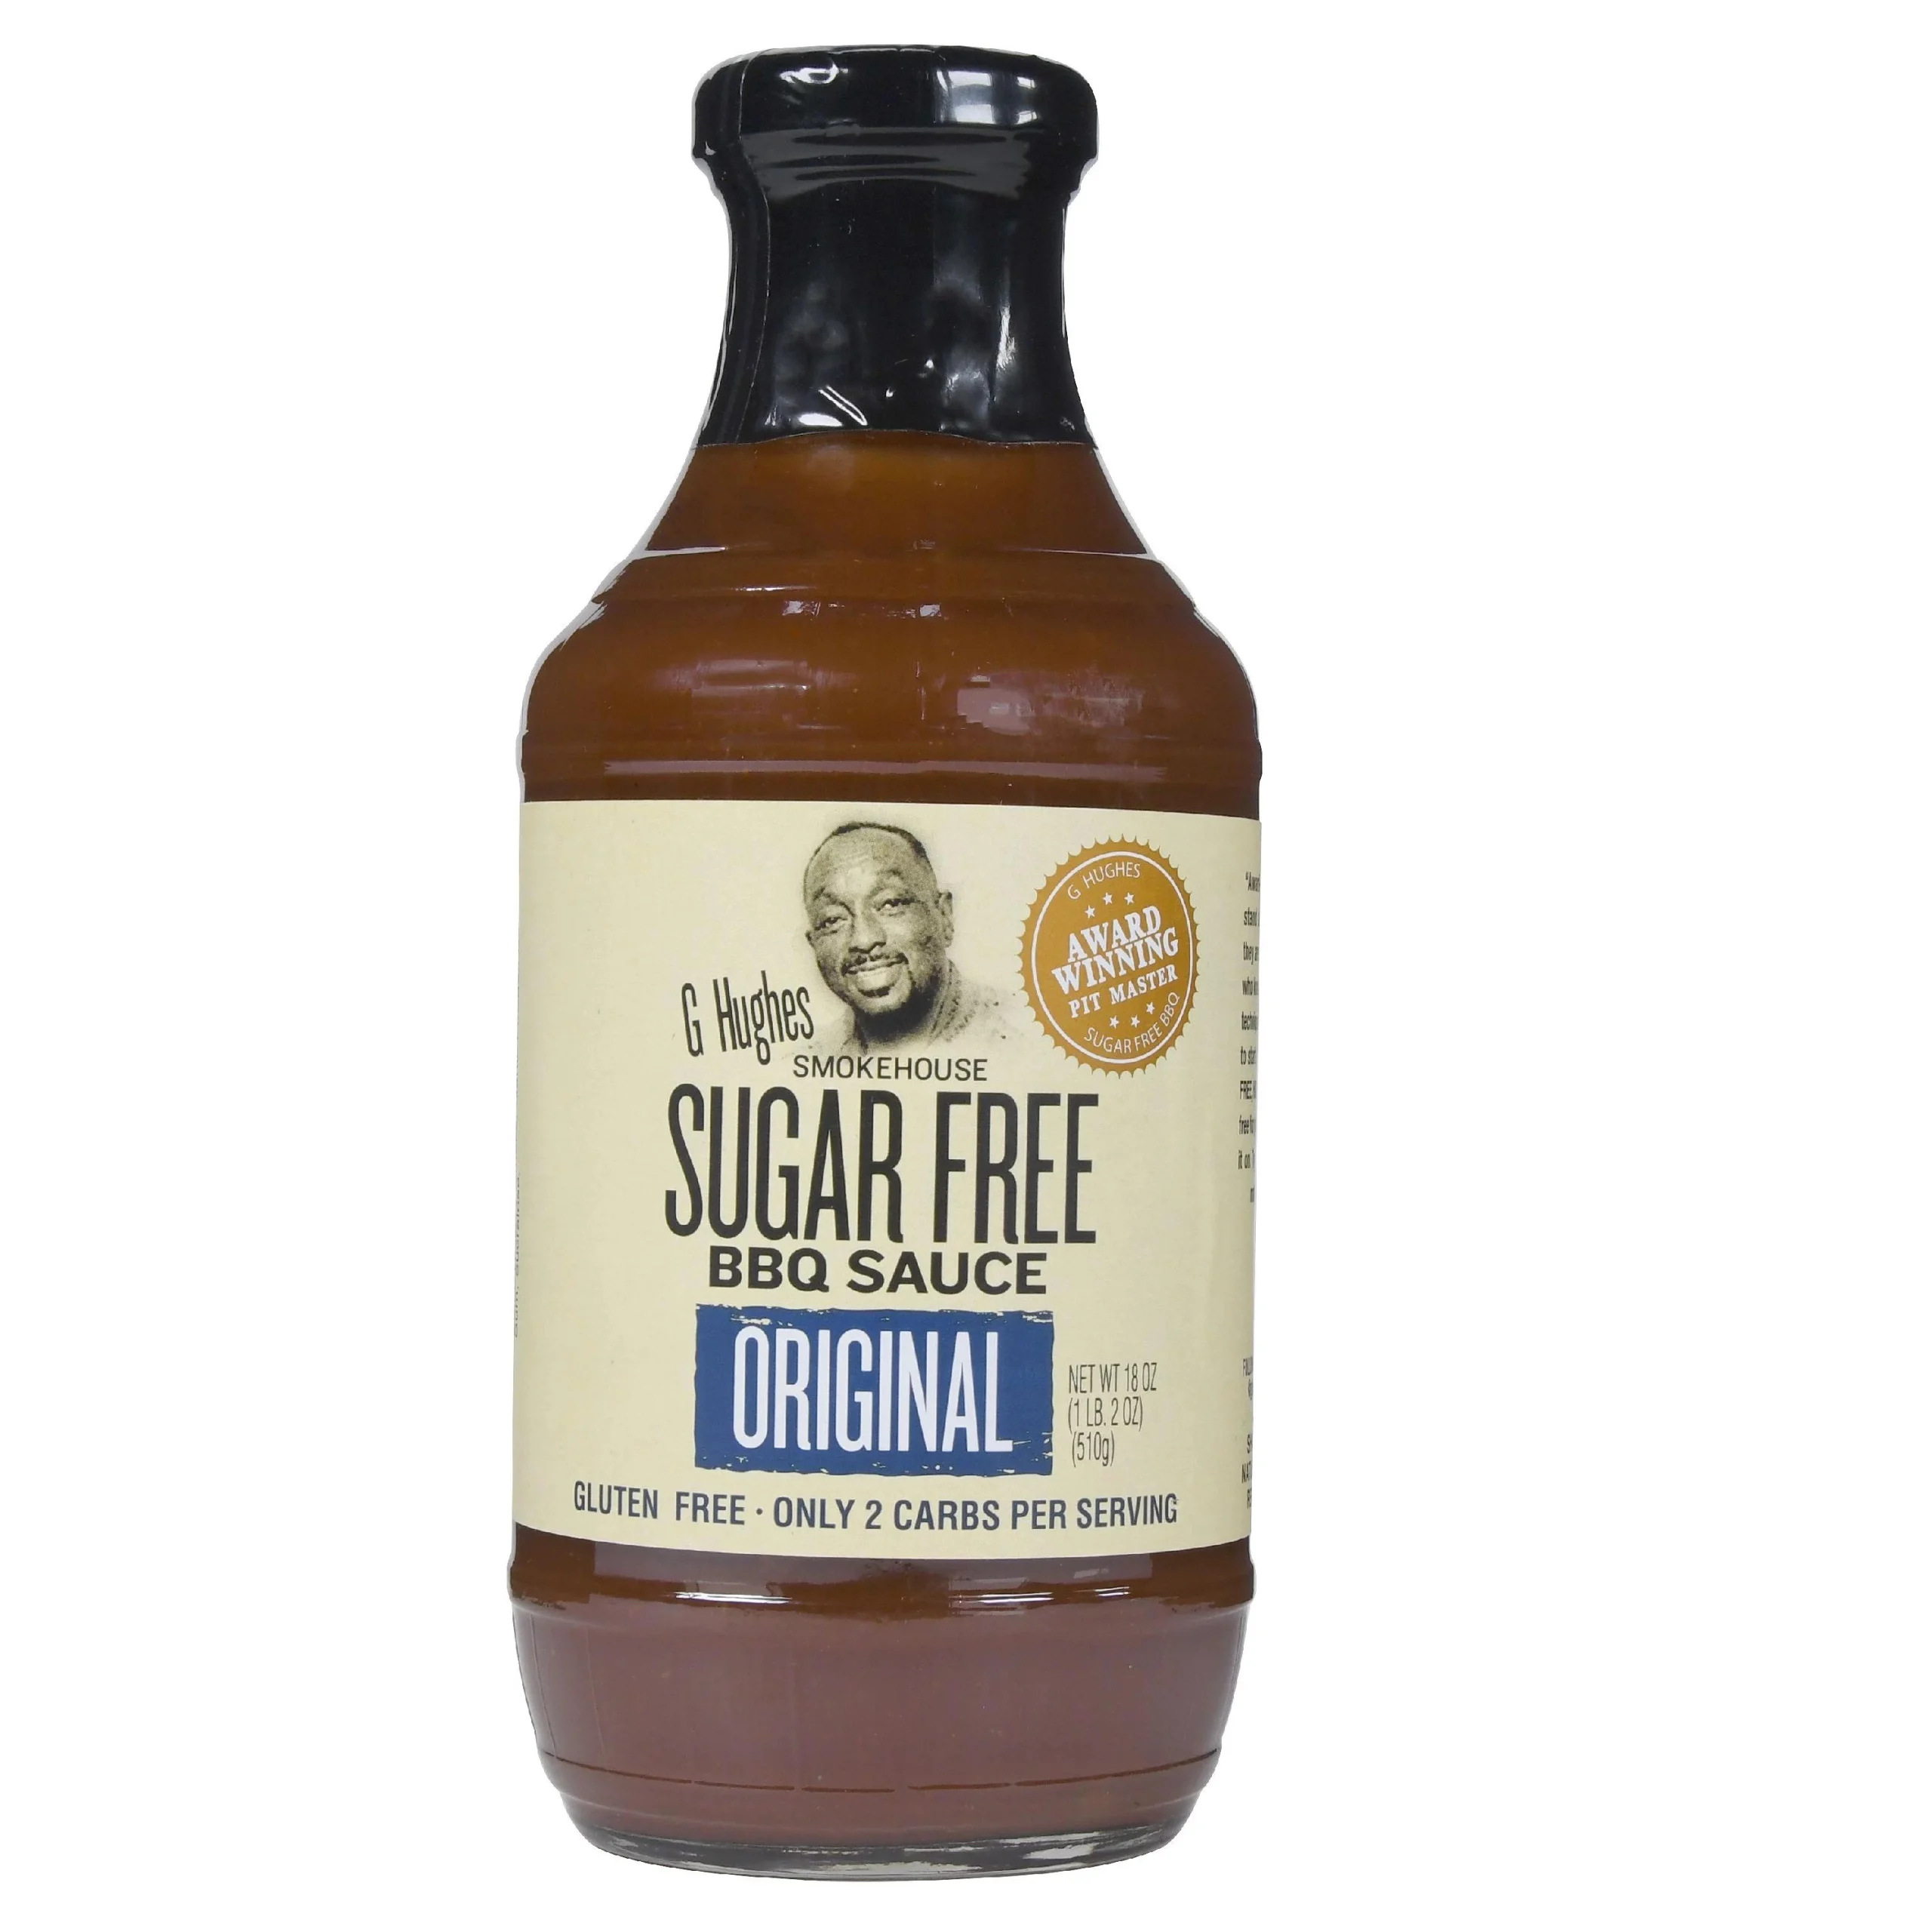 smokehouse sugar free bbq sauce - What sweetener is used in G Hughes sugar free BBQ sauce